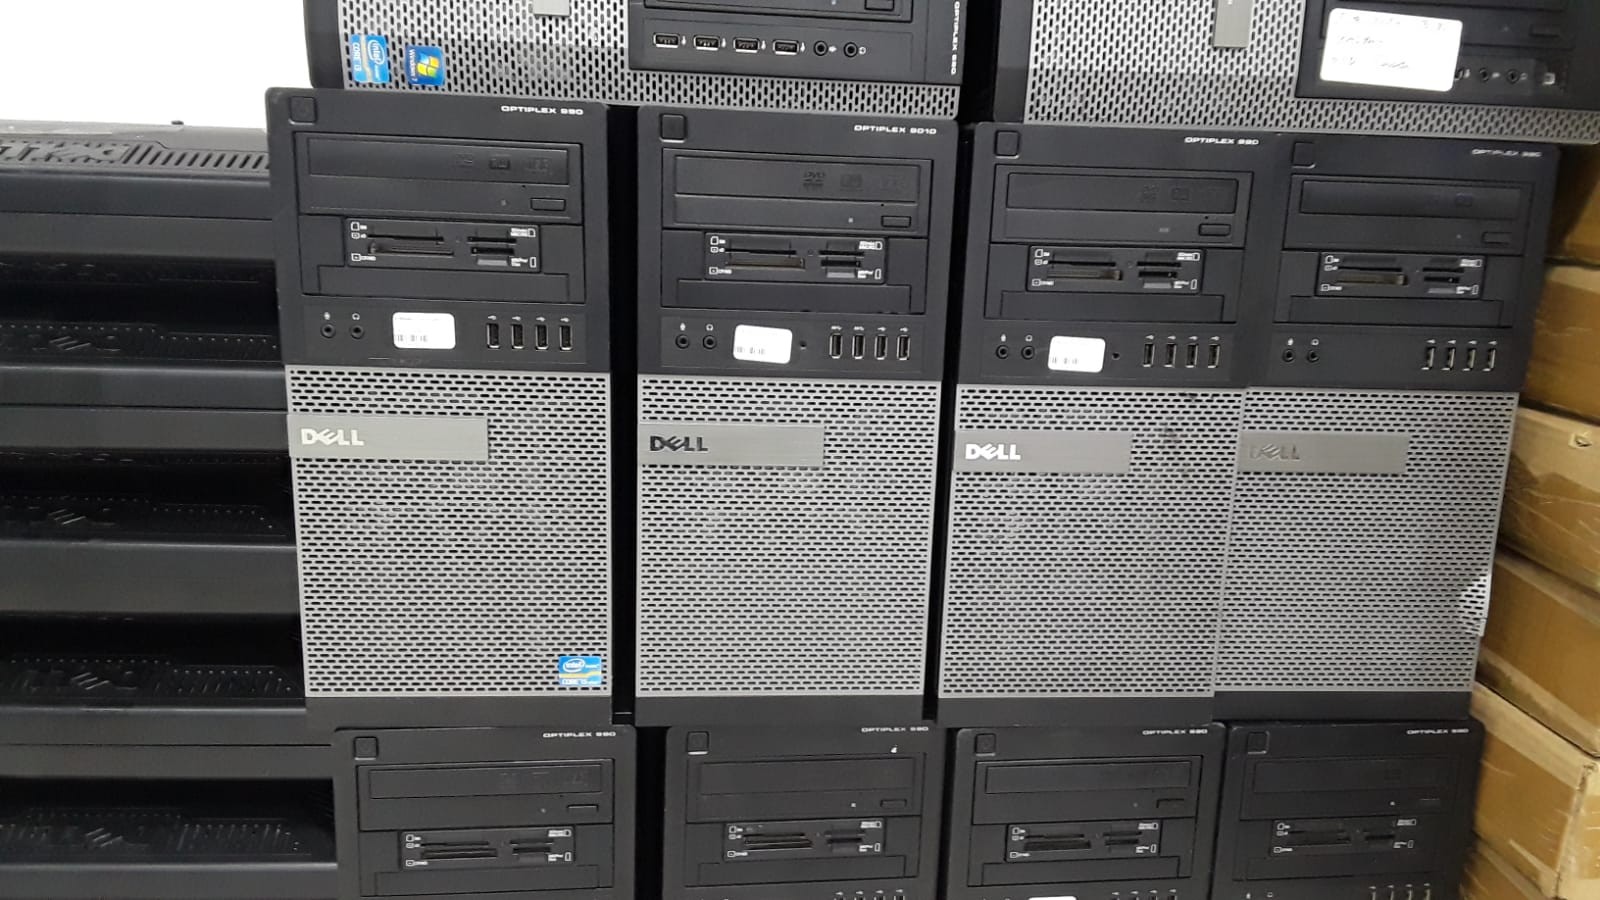 impresoras y scanners - Cpu Dell 990 Torre i5 2Th Generación